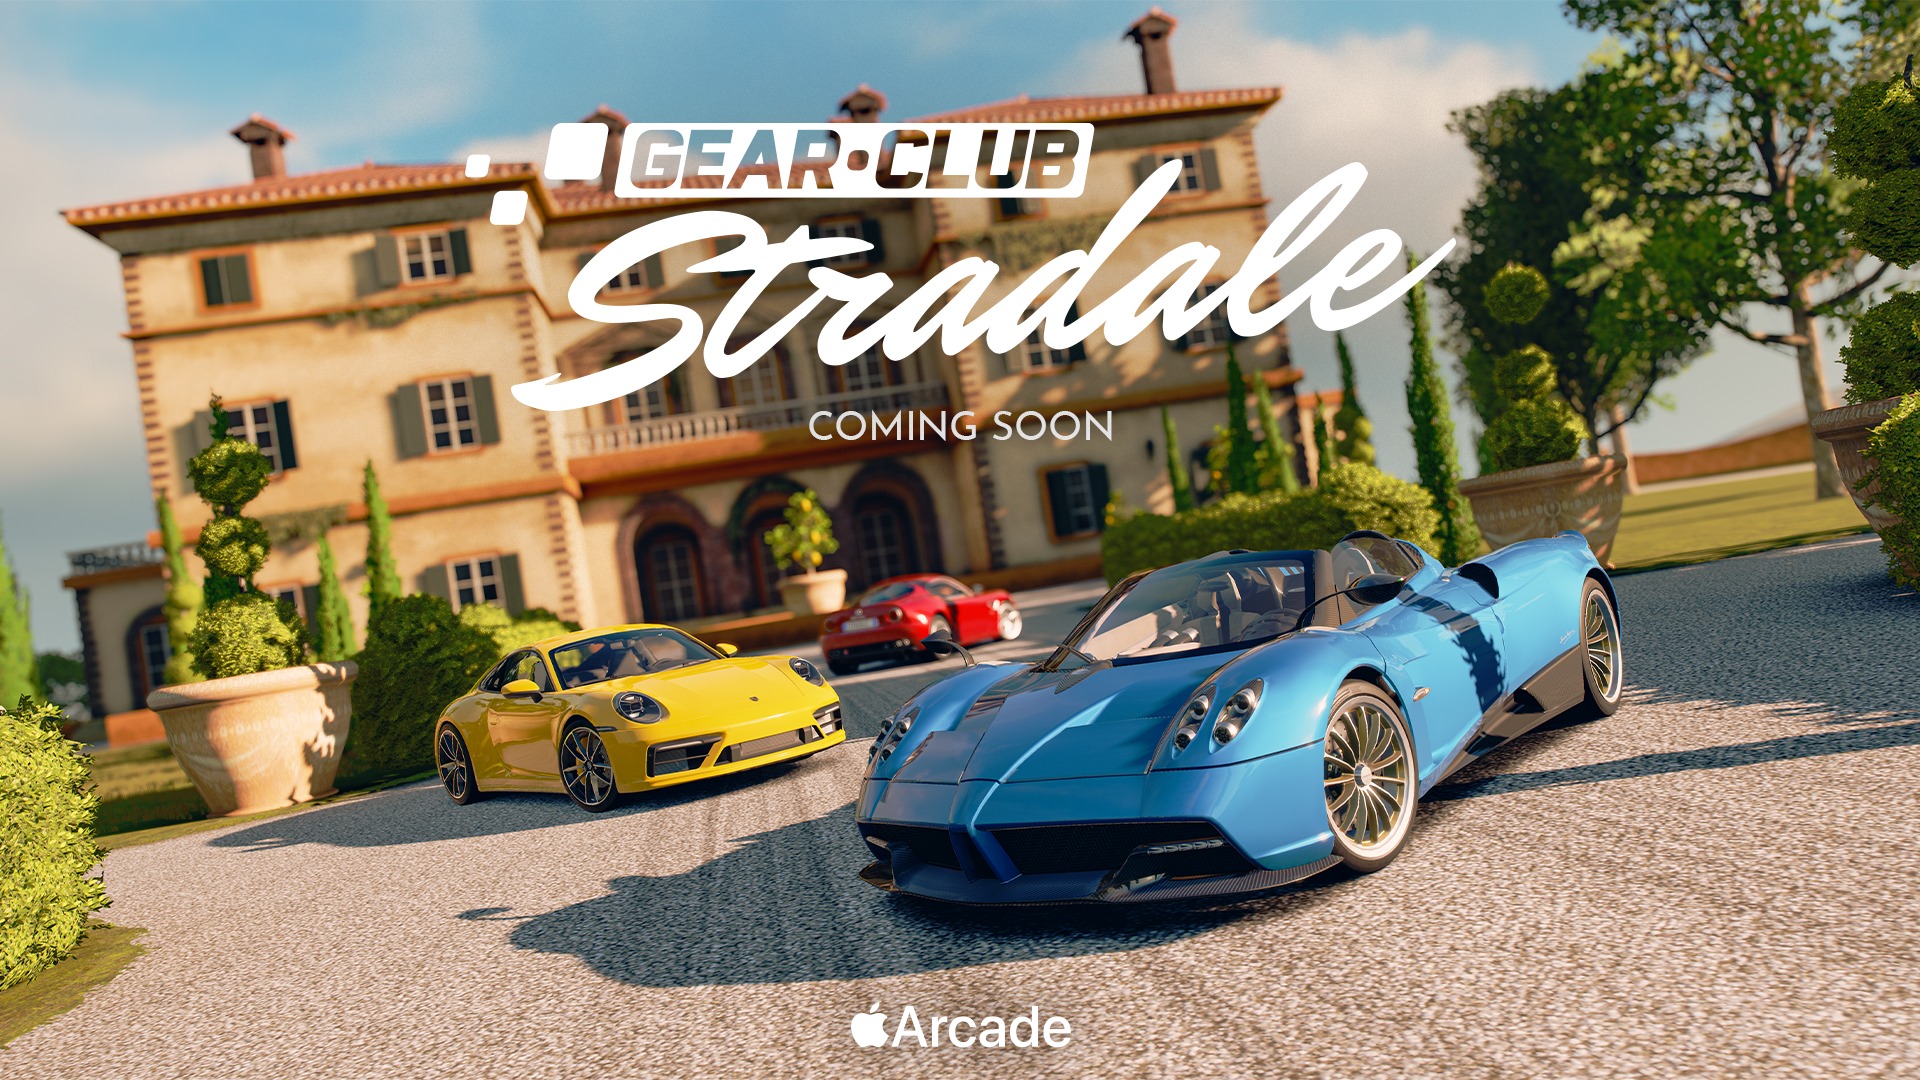 gear-club-stradale-ios-apple-arcade Gear.Club Stradale será exclusivo do iOS via Apple Arcade